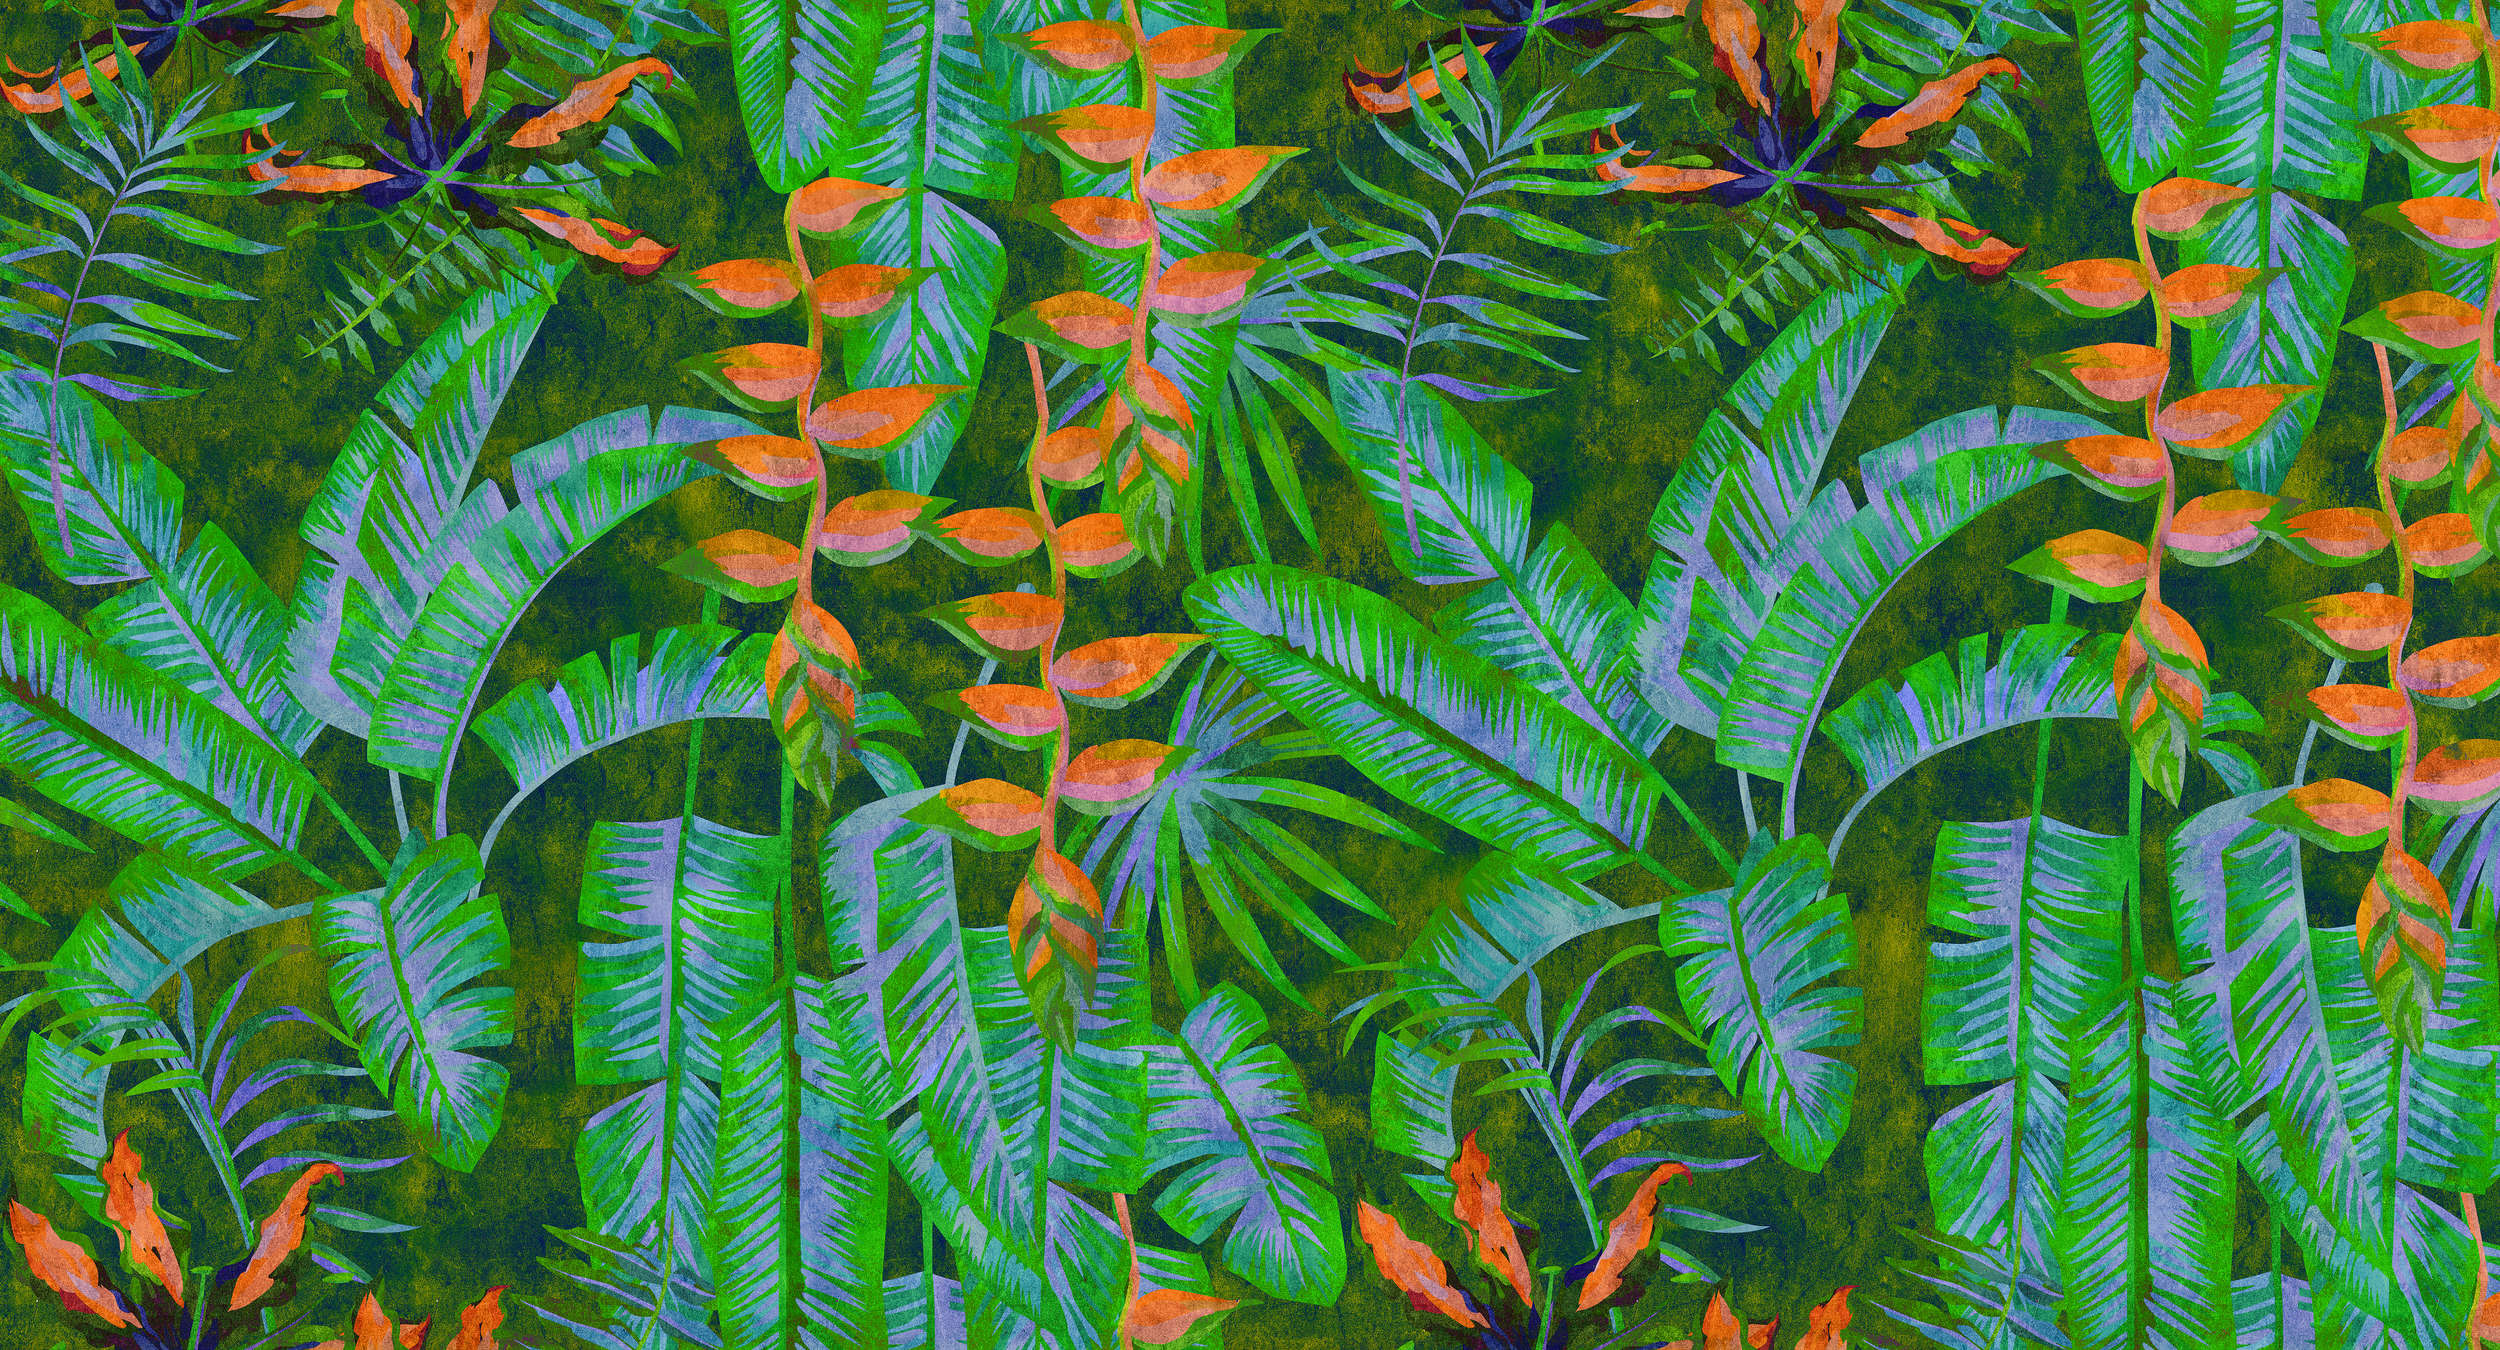             Tropicana 4 - Jungle behang met felle kleuren - vloeipapier structuur - groen, oranje | structuur vlieseline
        